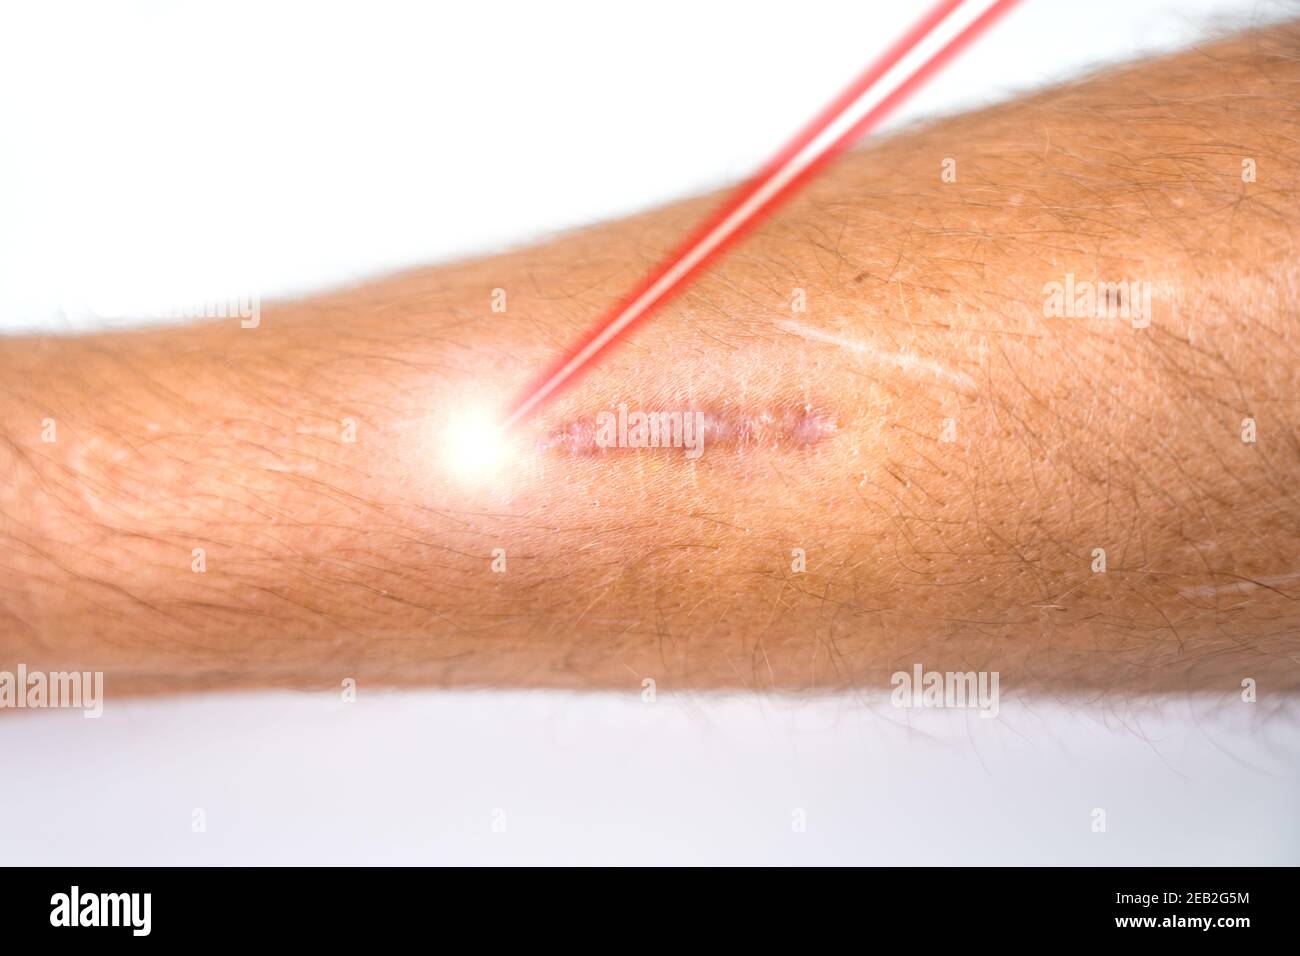 La jambe de l'homme et le faisceau laser pendant le traitement d ...